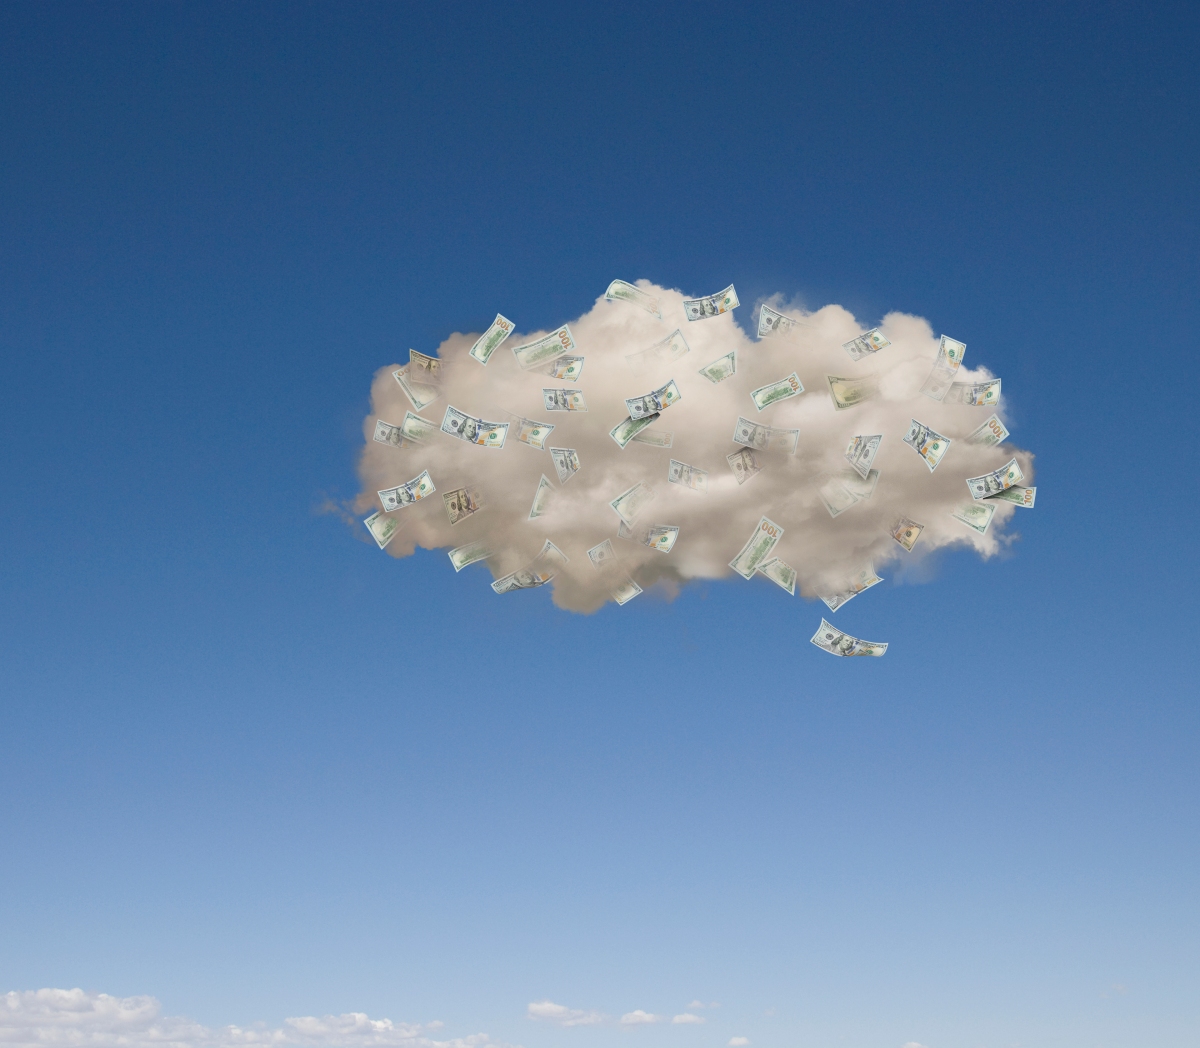 La startup de almacenamiento en la nube Wasabi recauda $ 250 millones para alcanzar el estado de unicornio